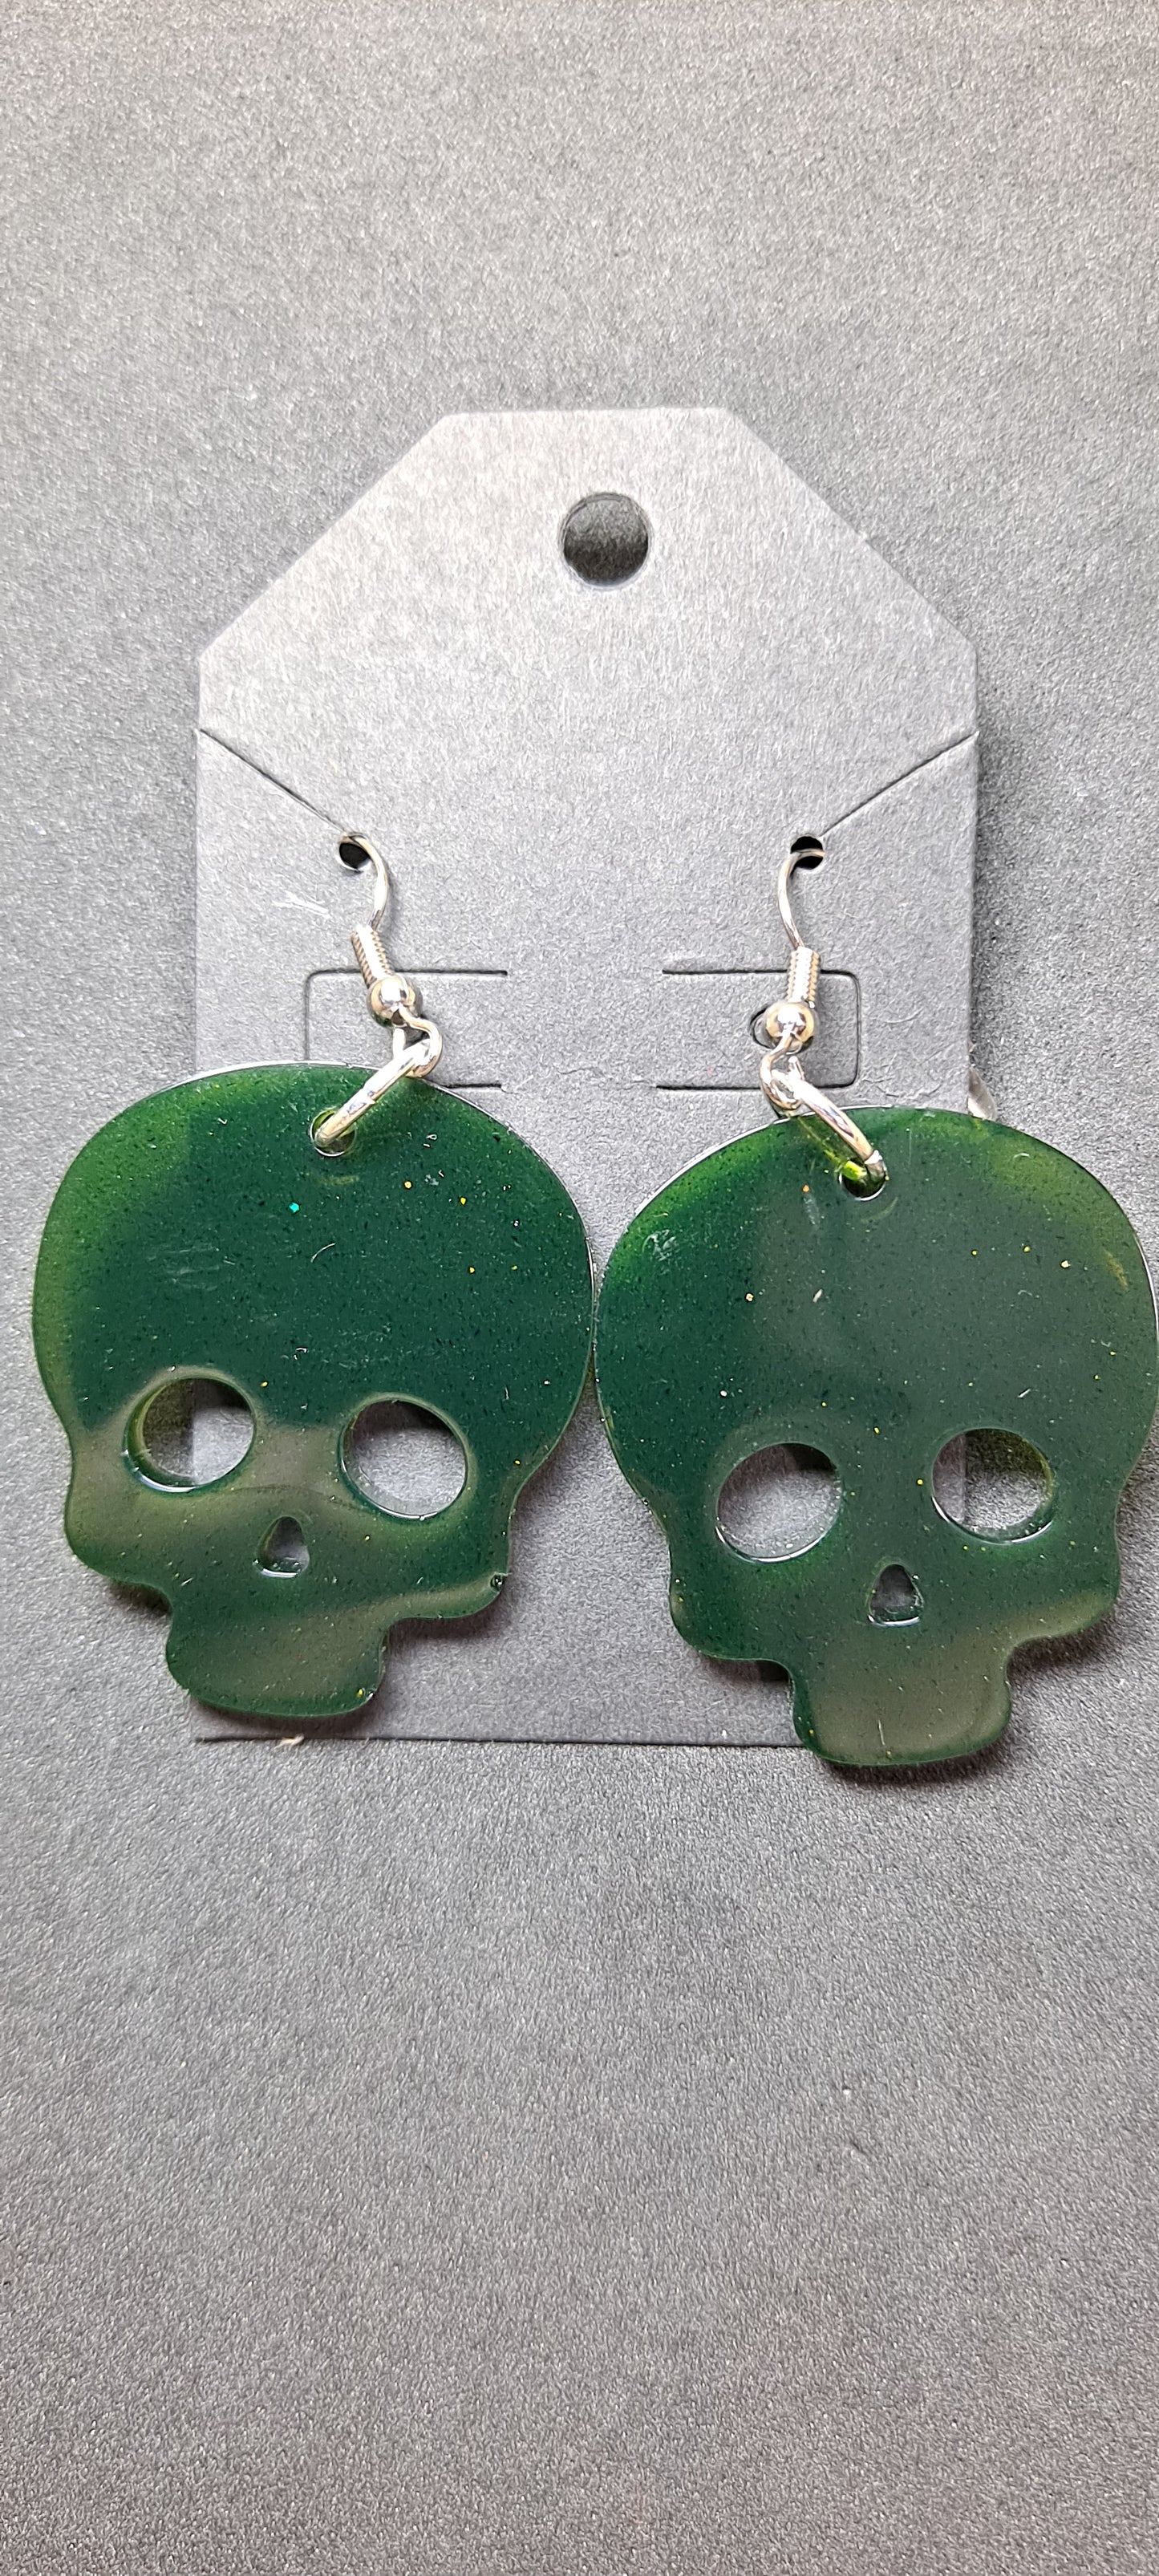 Spooky Halloween Skull Shaped Earrings